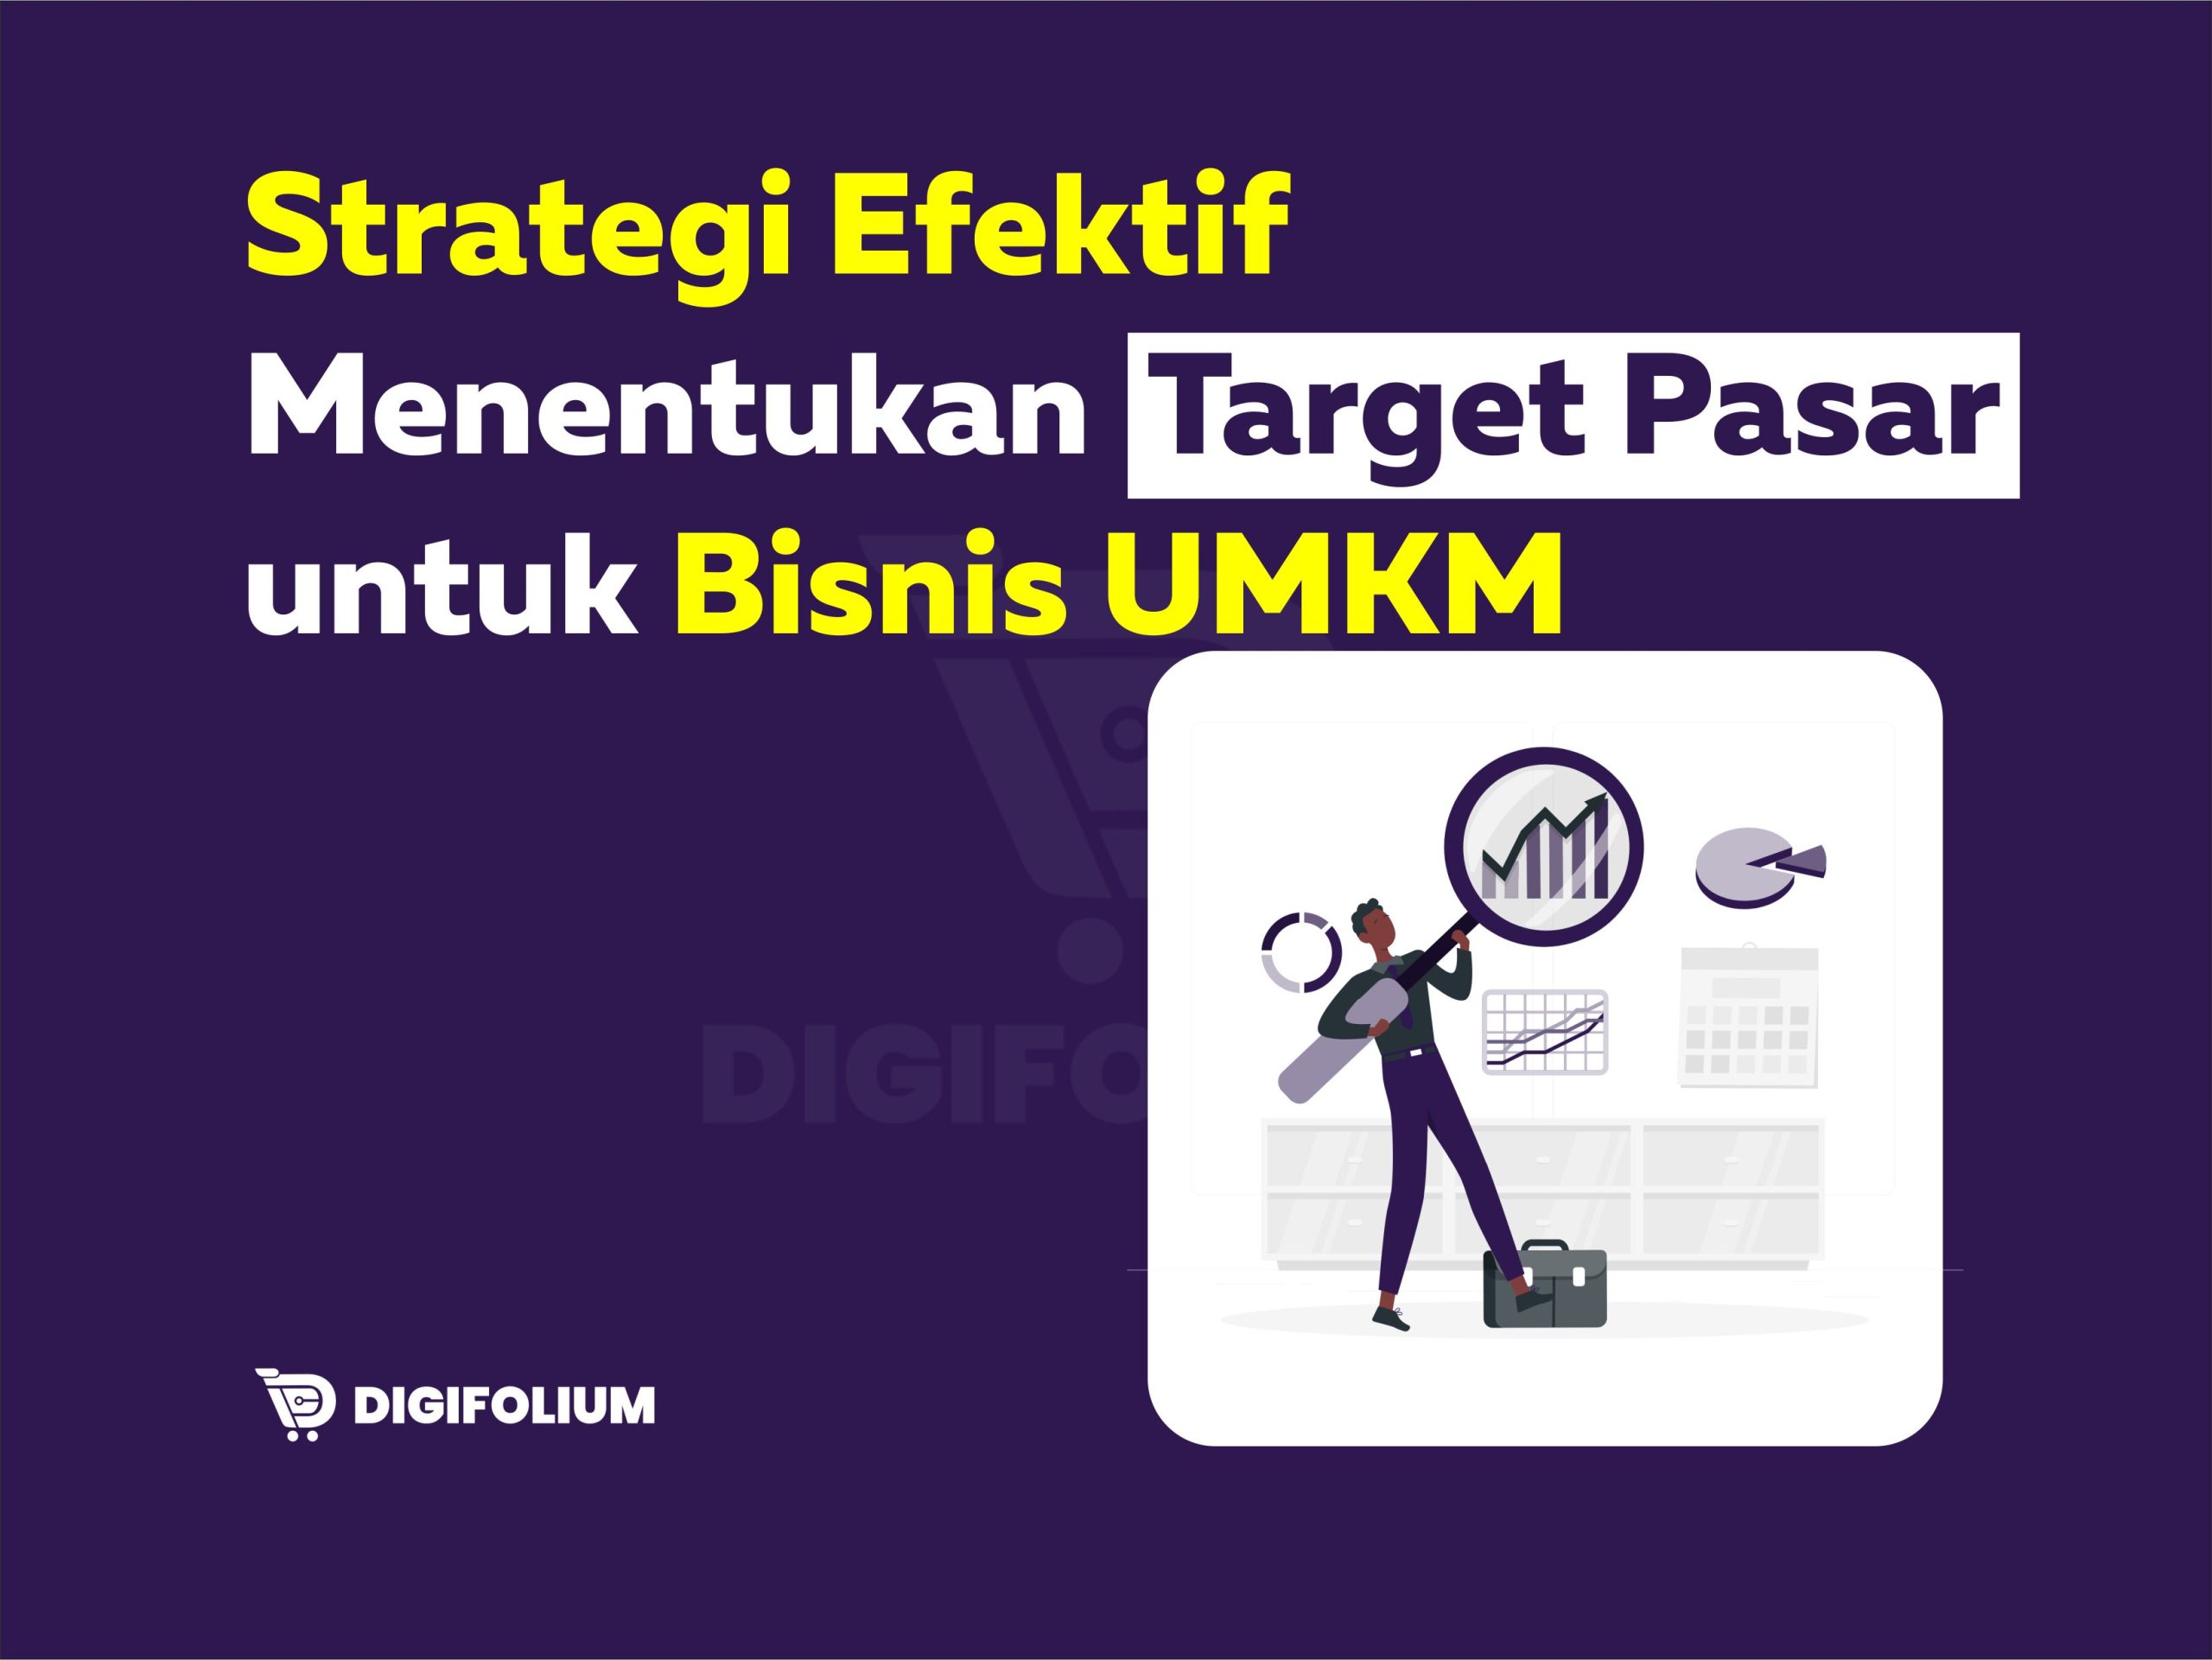 Strategi Efektif Menentukan Target Pasar untuk Bisnis UMKM